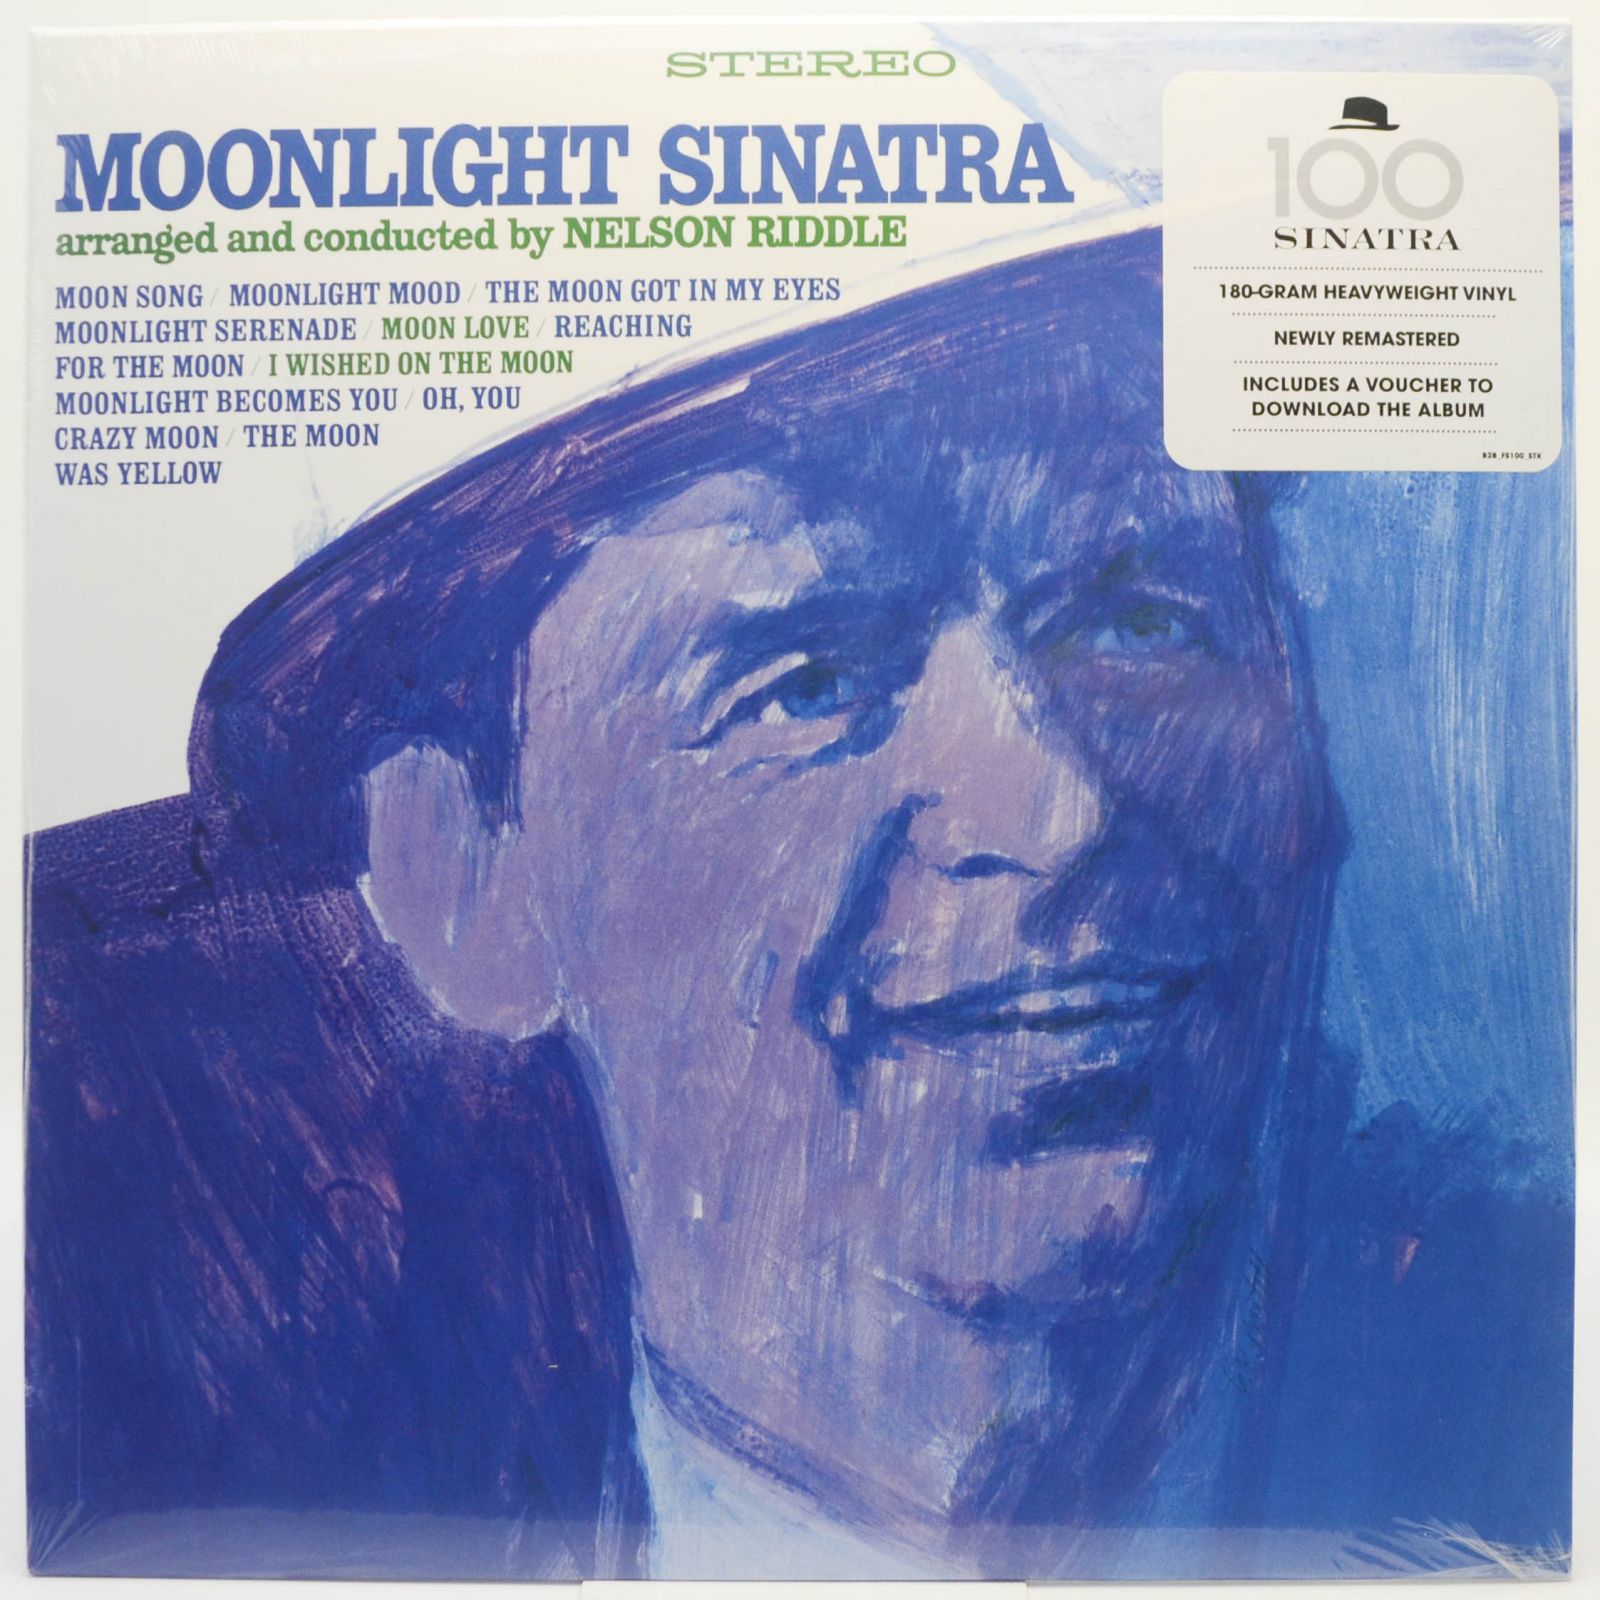 Frank Sinatra — Moonlight Sinatra, 2014